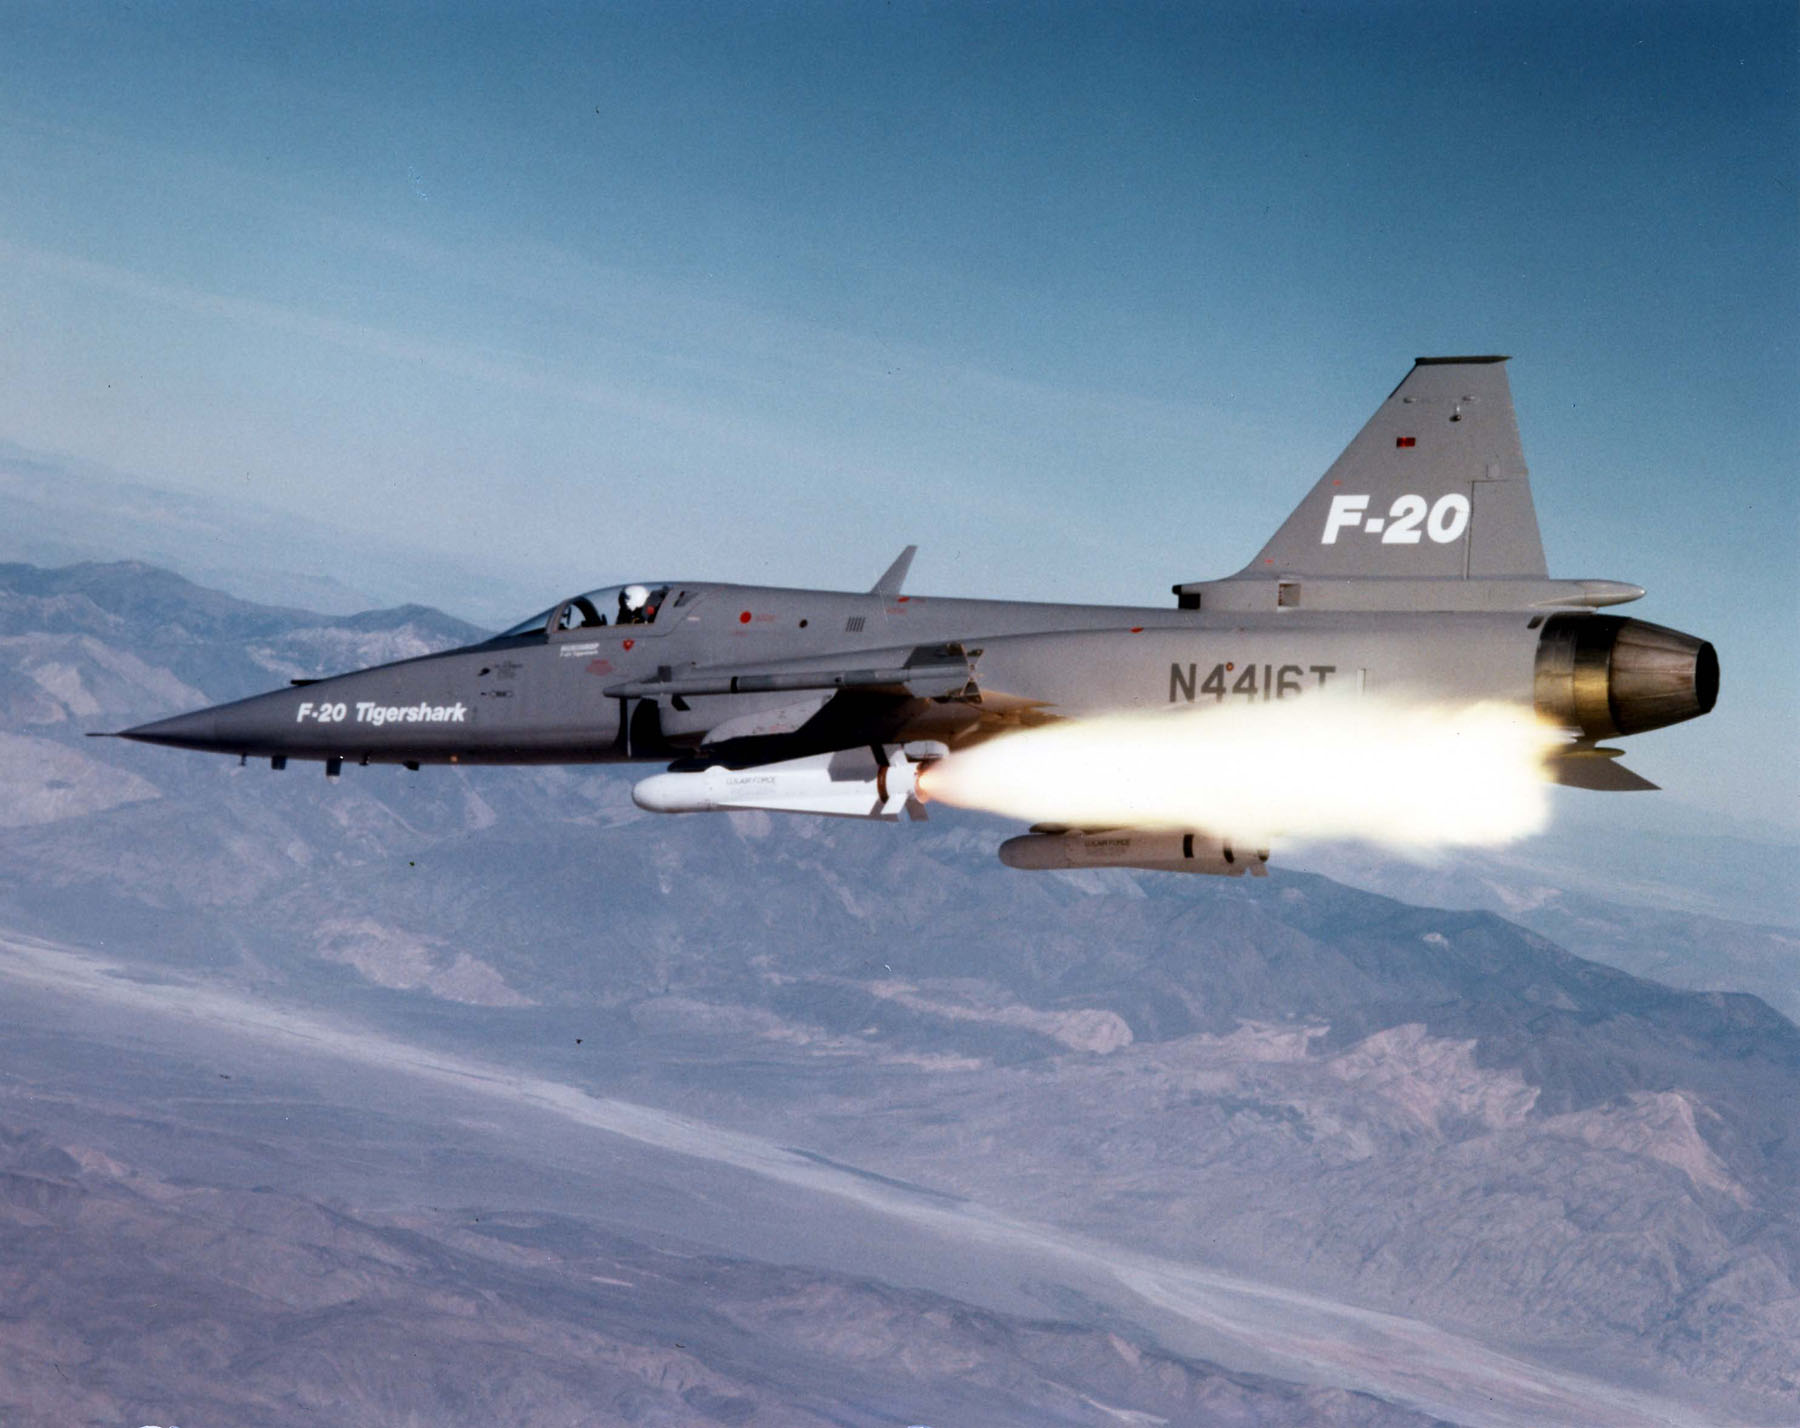 The F-20 Tigershark.